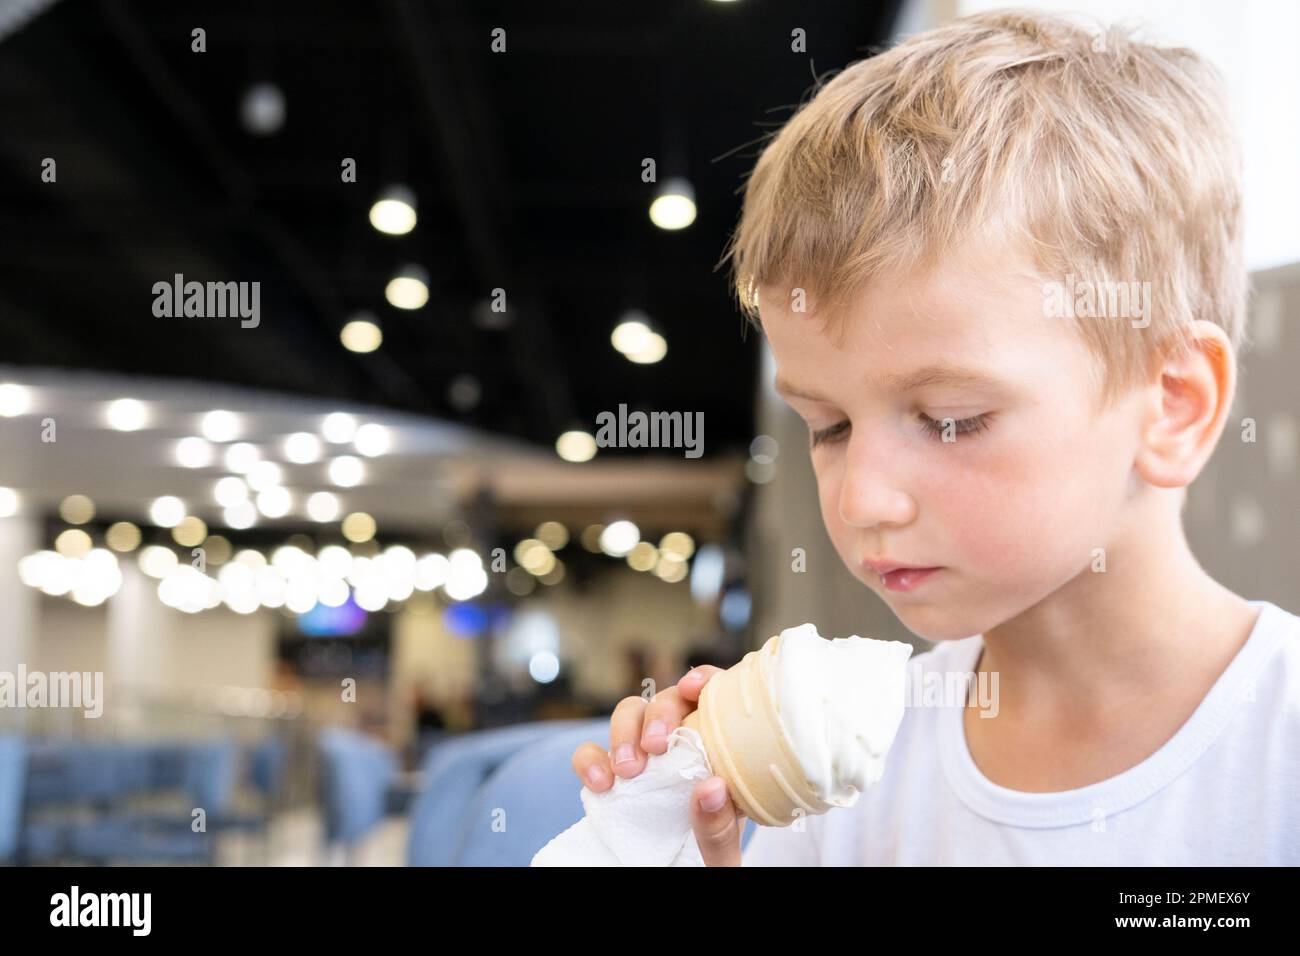 Ritratto di un piccolo ragazzo affamato divertente mangiare gelato freddo delizioso in una tazza di waffle seduti in un caffè, sfondo scuro, bokeh. Un bambino gode di cre di ghiaccio Foto Stock